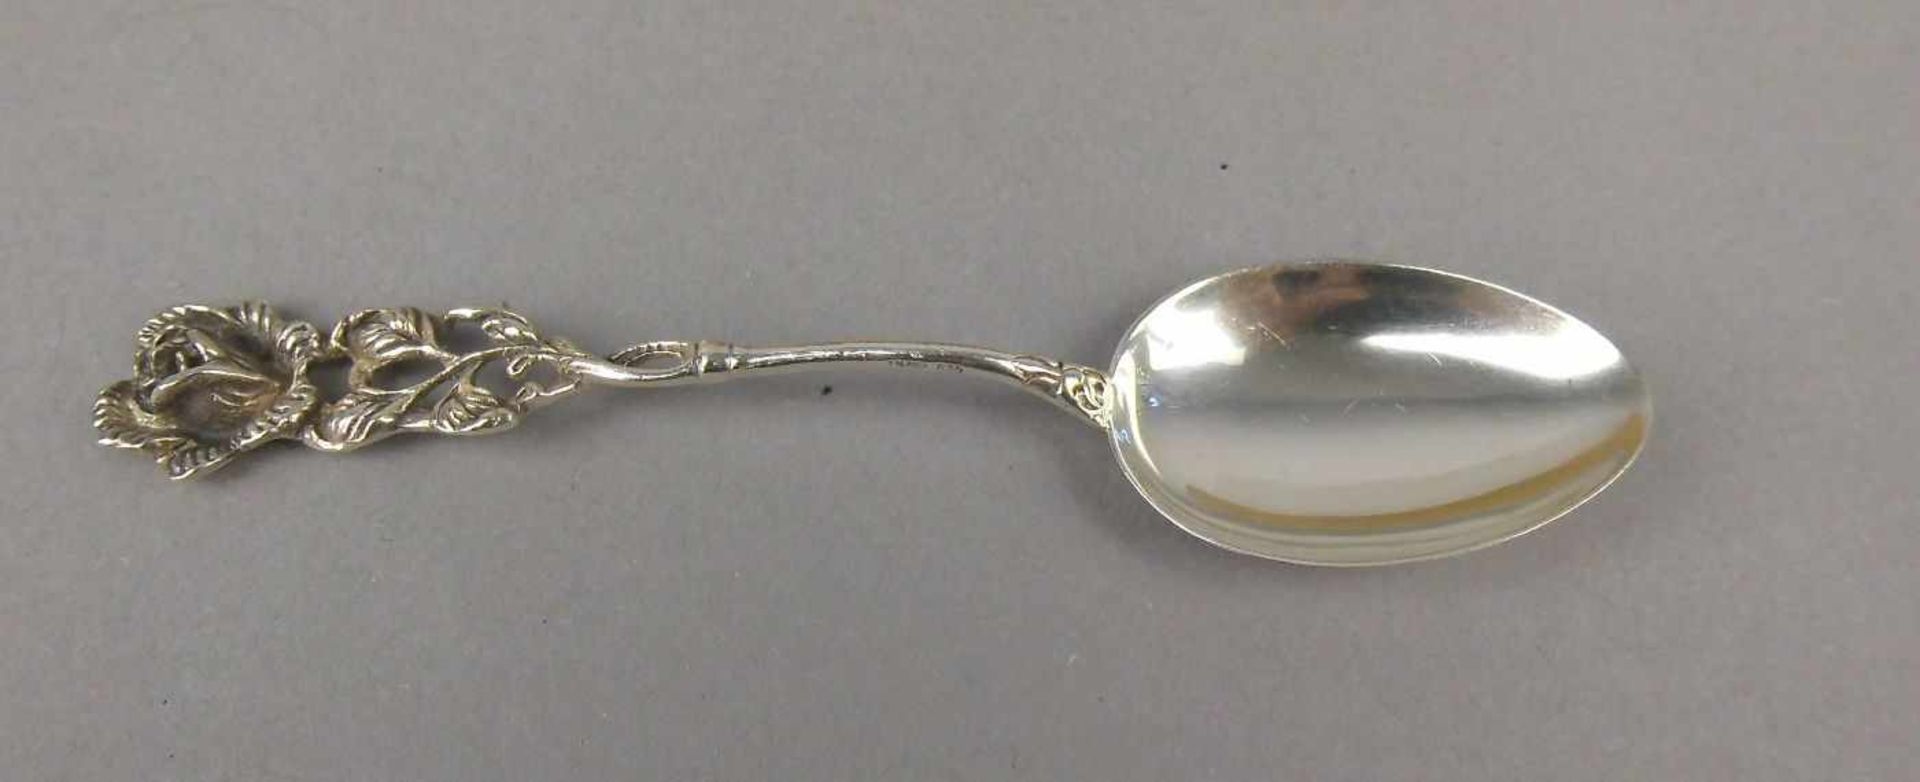 6 KAFFEE - ODER TEELÖFFEL, 835er Silber (78 g), gepunzt mit Feingehaltsangabe und bezeichnet ALBO; - Image 2 of 3